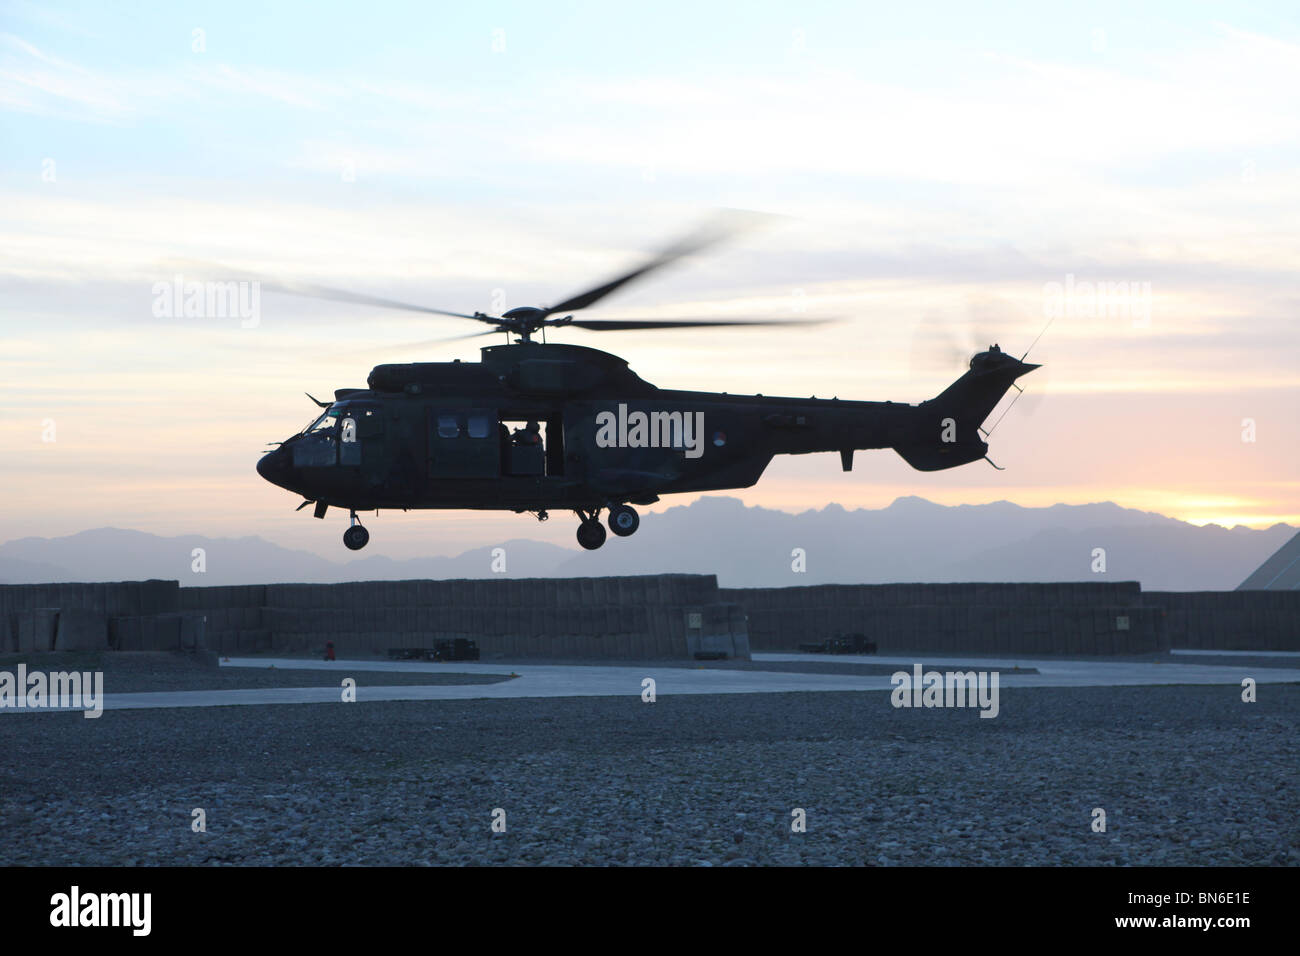 Fuerza Aérea Holandesa en Uruzgán, Afganistán Foto de stock